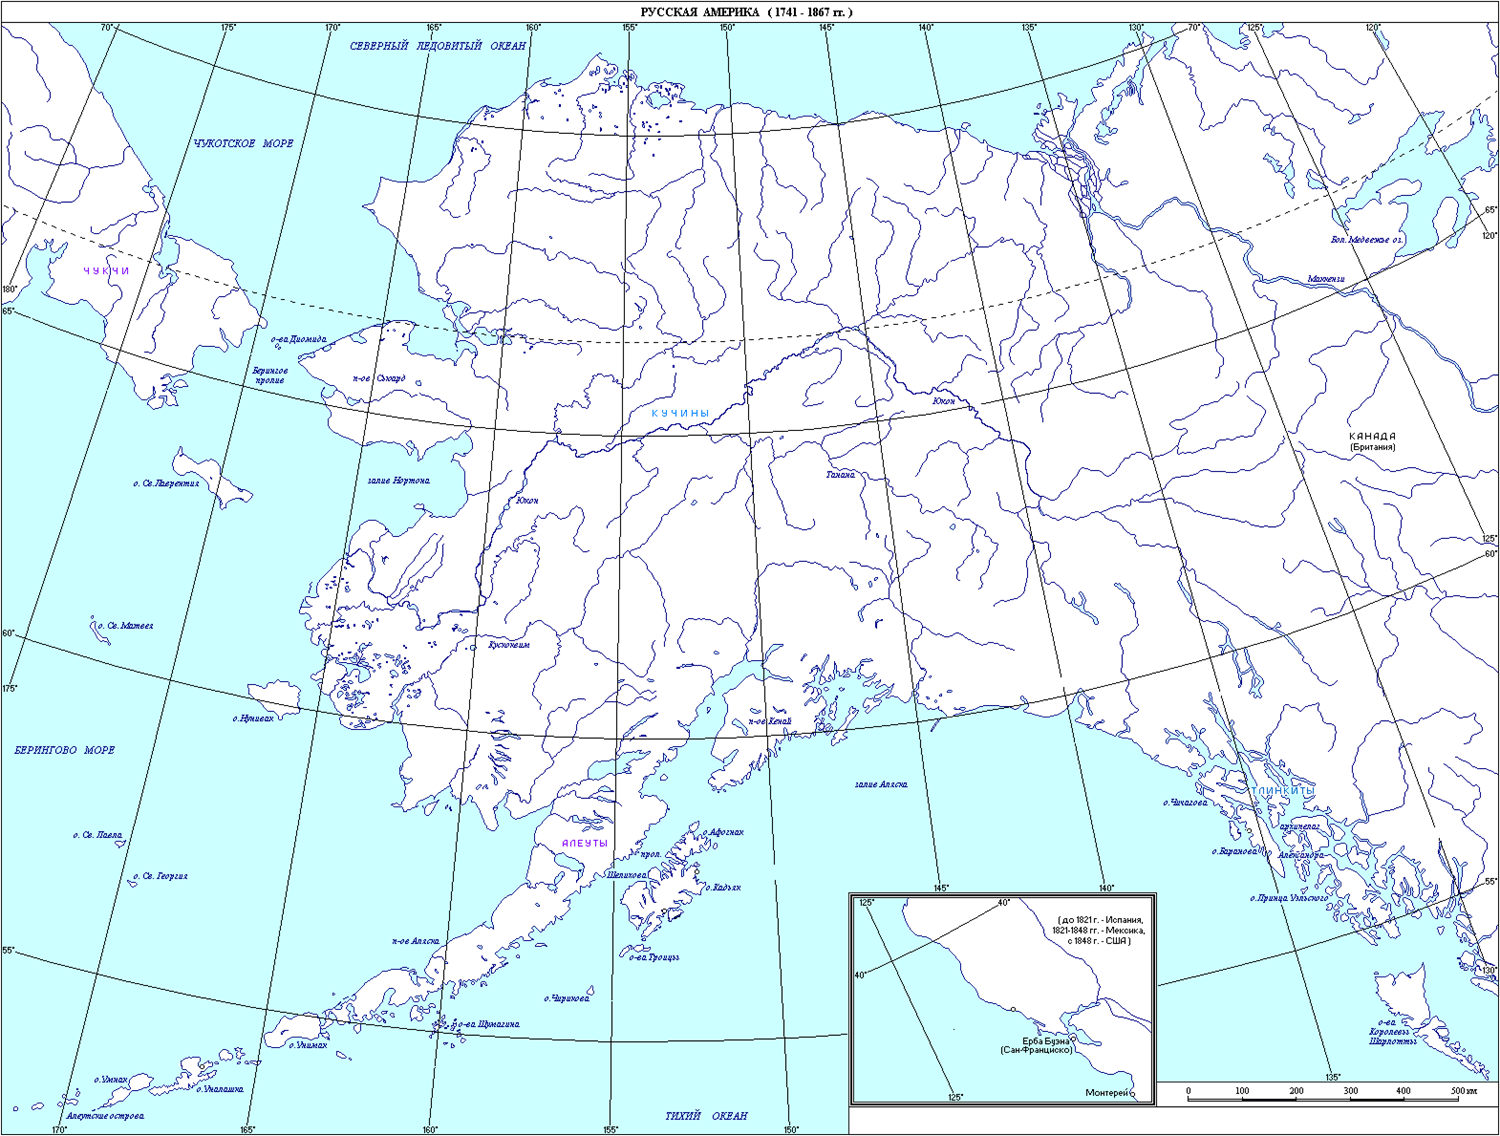 Аляска на контурной карте. Полуостров Аляска на карте Северной Америки на контурной карте. Штат Аляска на карте. Штат Аляска контурная карта. Полуостров Аляска на контурной карте Северной Америки.